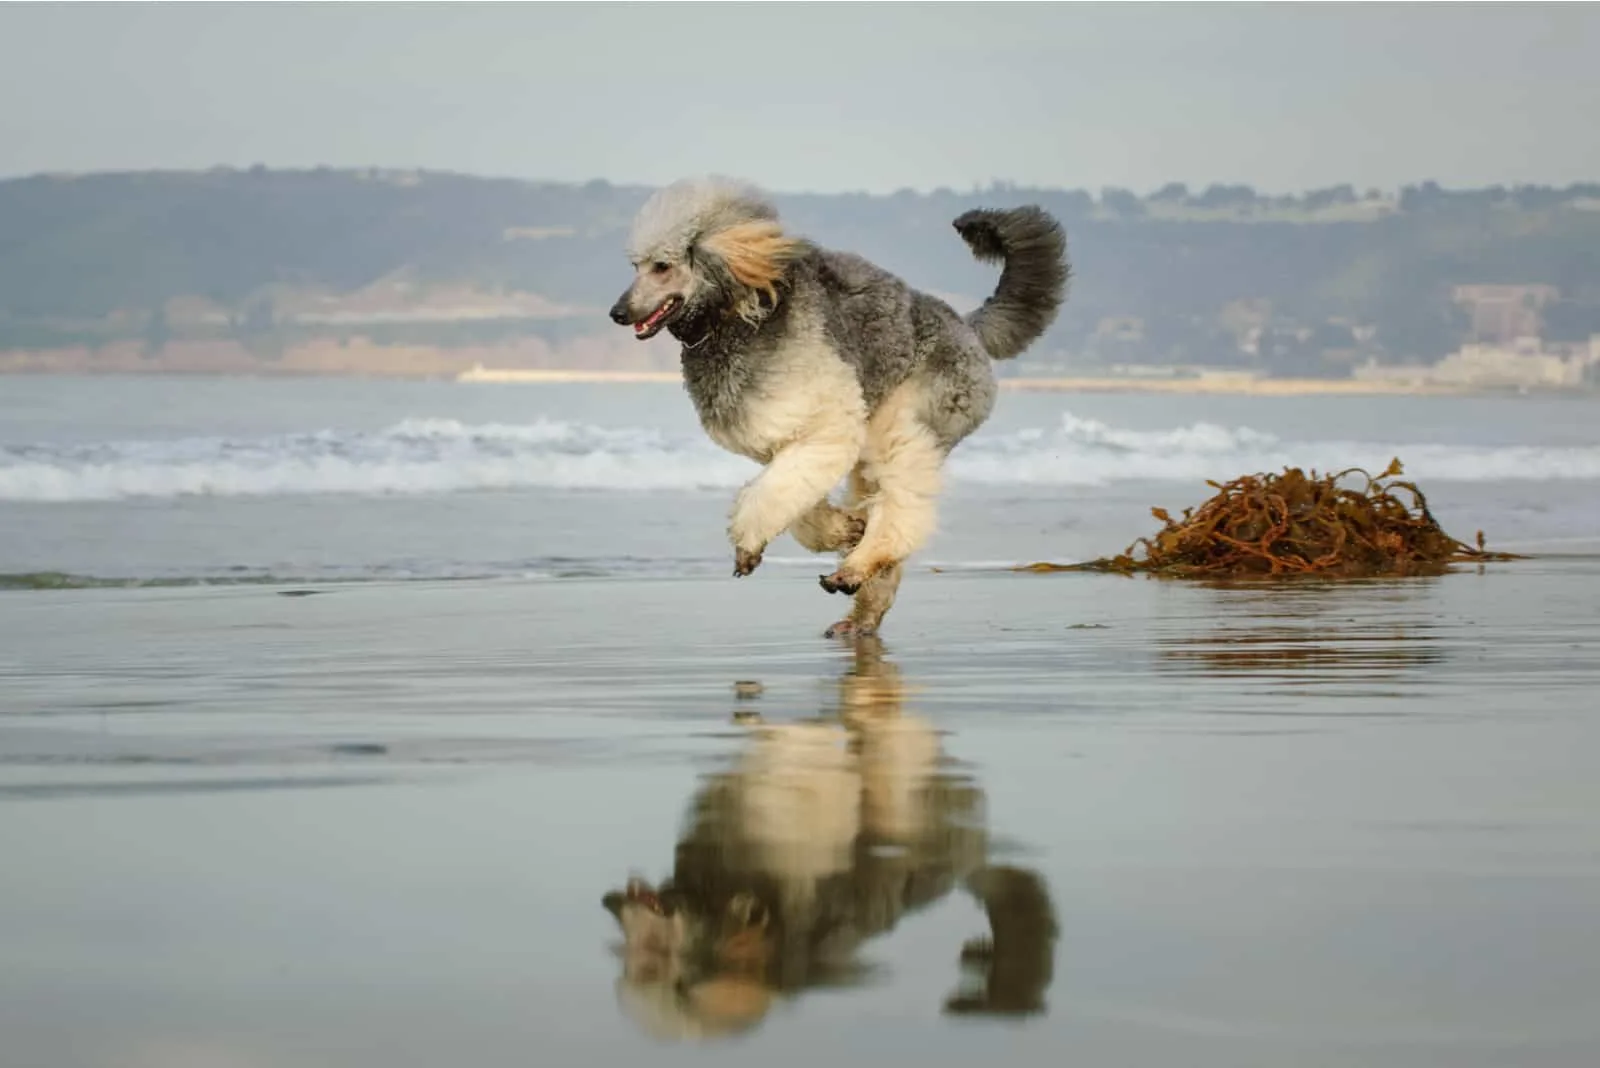 Parti Poodle runs along the wet sandy beach